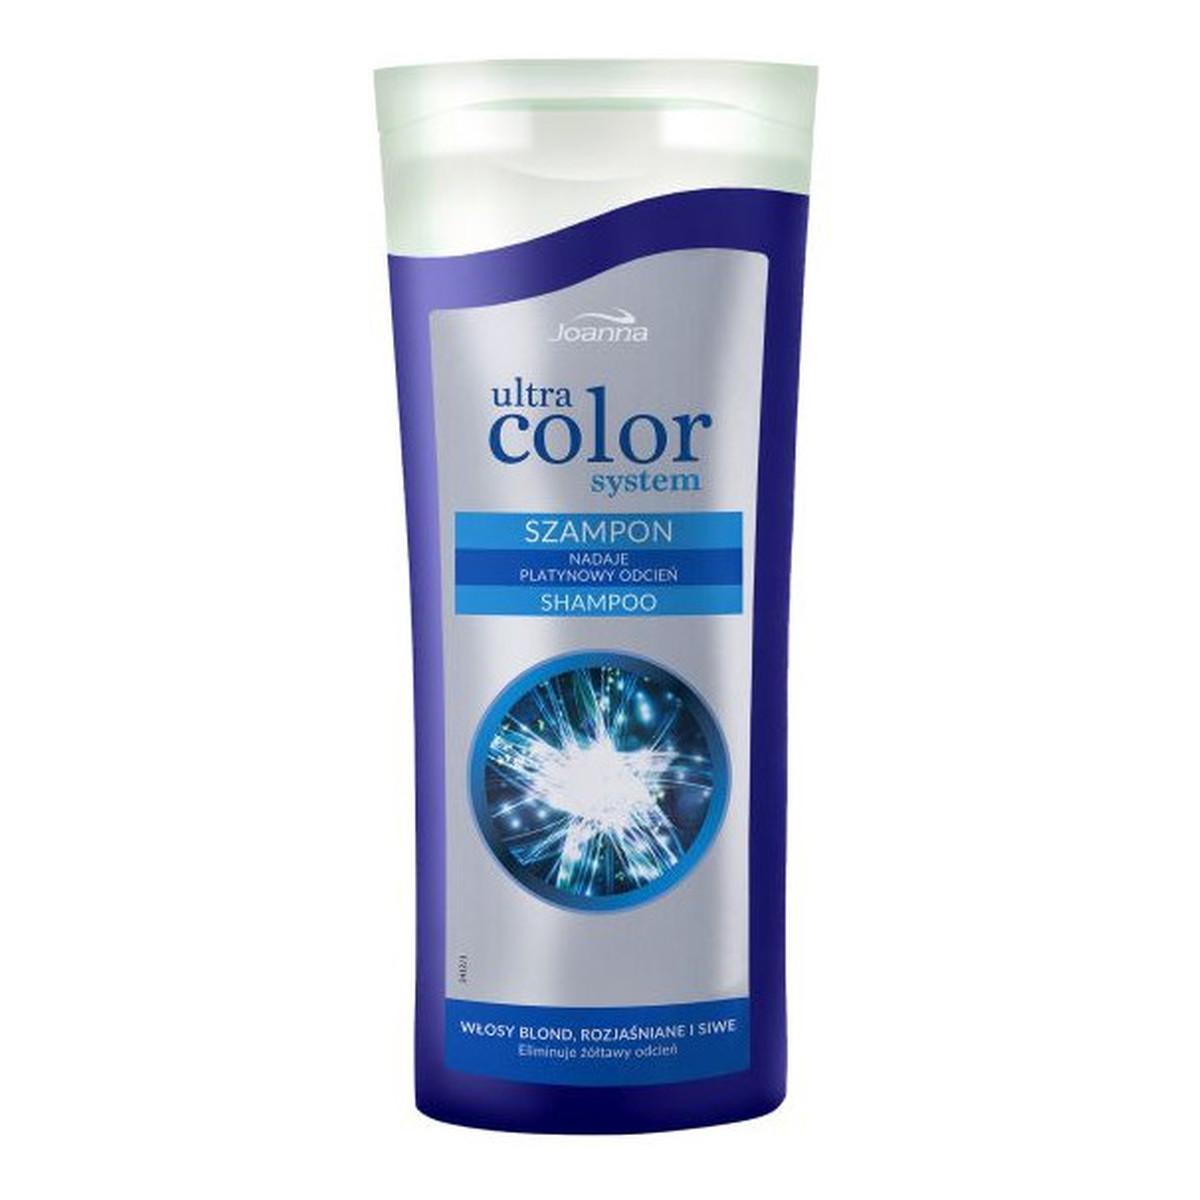 joanna ultra color system szampon nadaje platynowy odcien